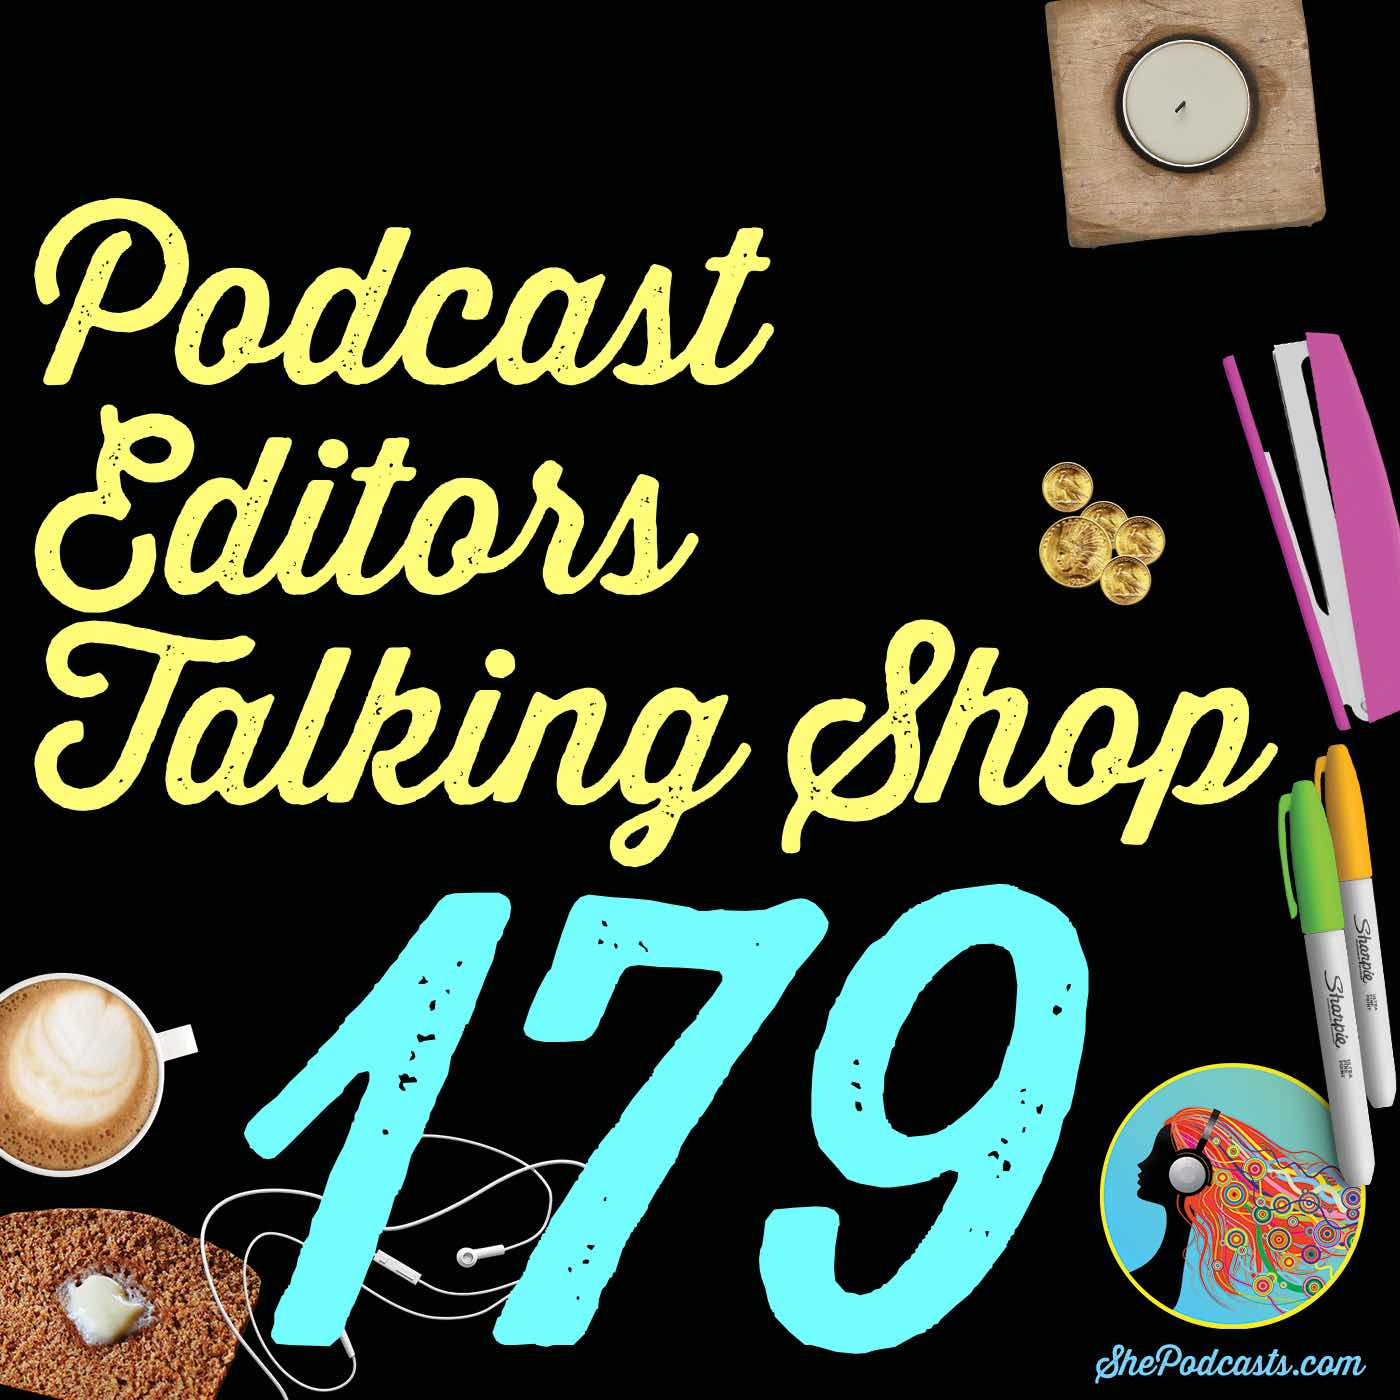 179 Podcast Editors Talking Shop